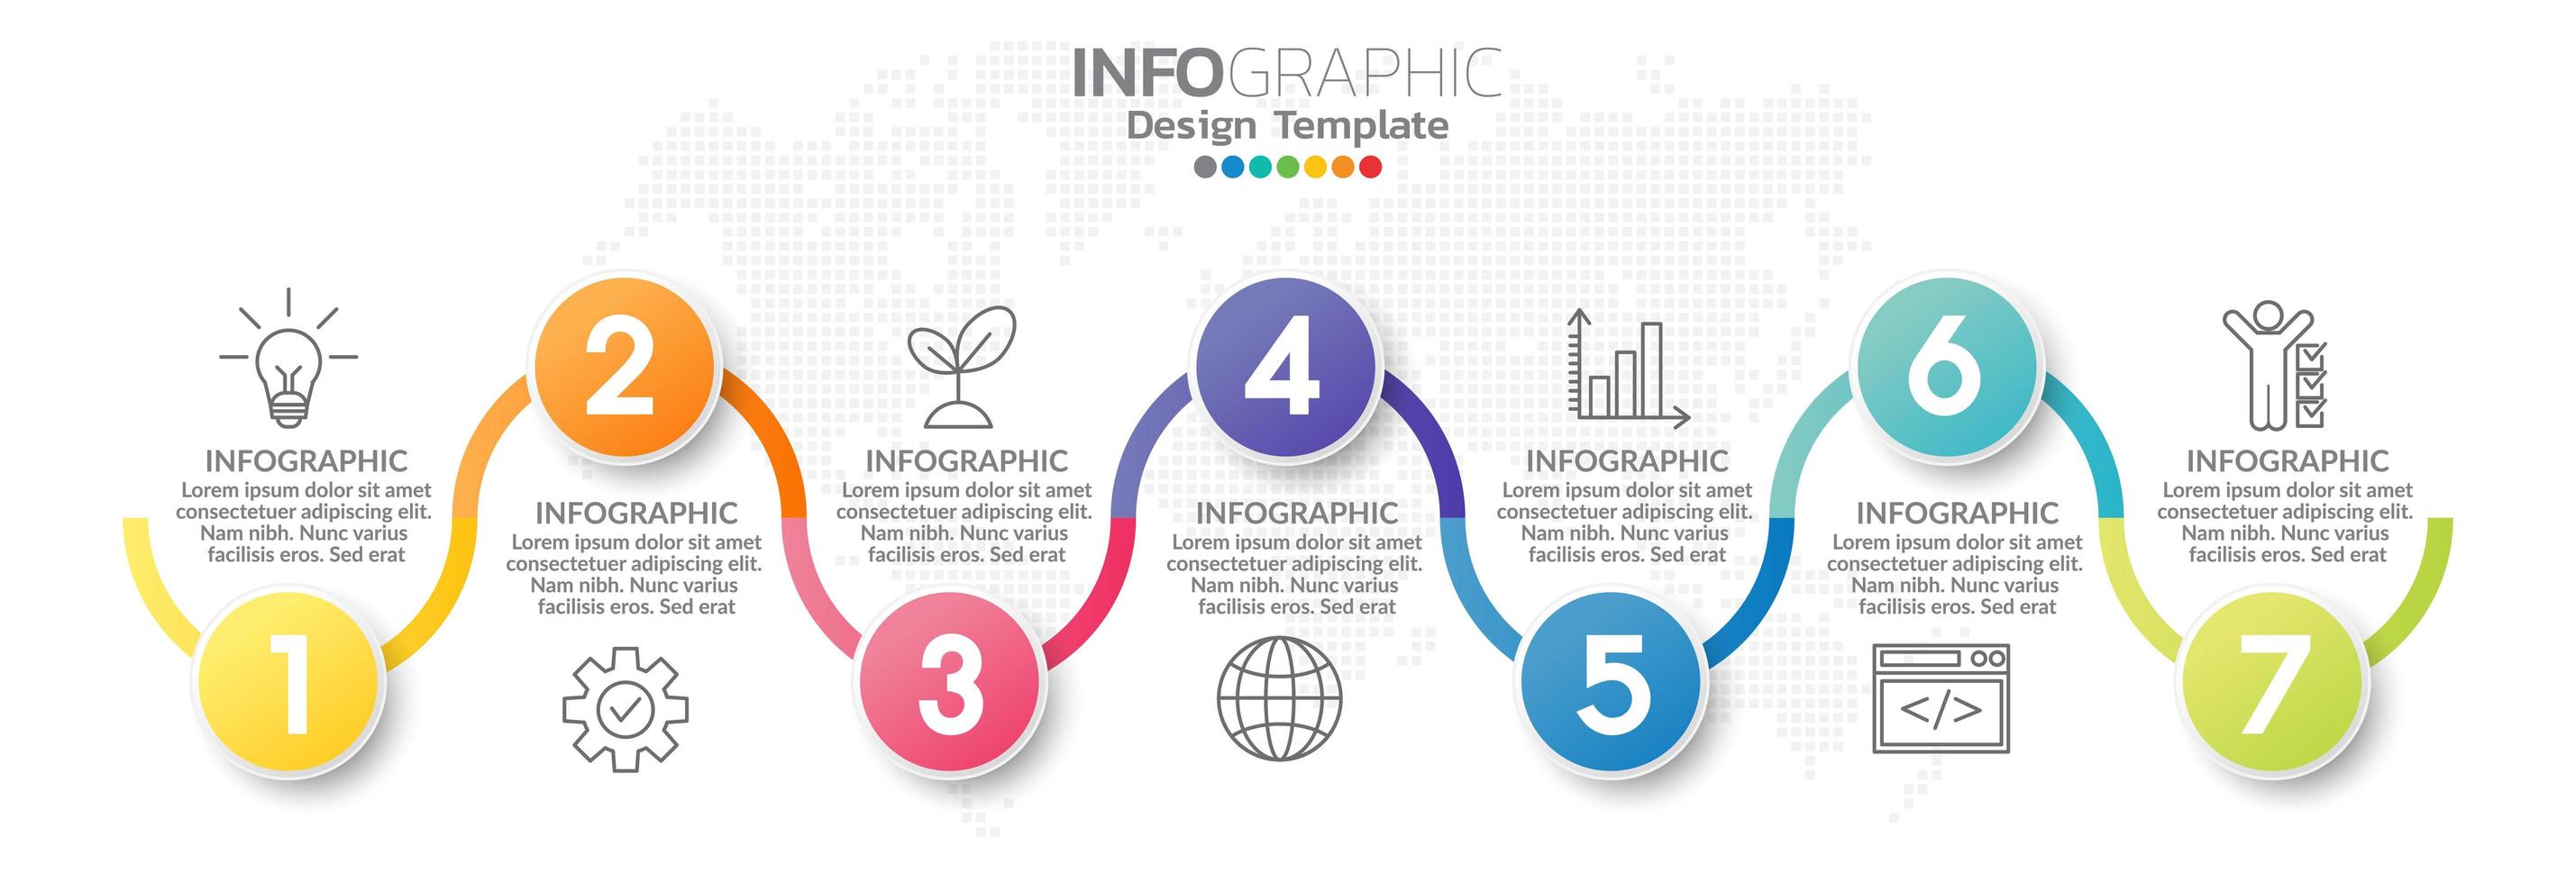 infographic elementen voor inhoud, diagram, stroomdiagram, stappen, onderdelen, tijdlijn, workflow, grafiek. vector